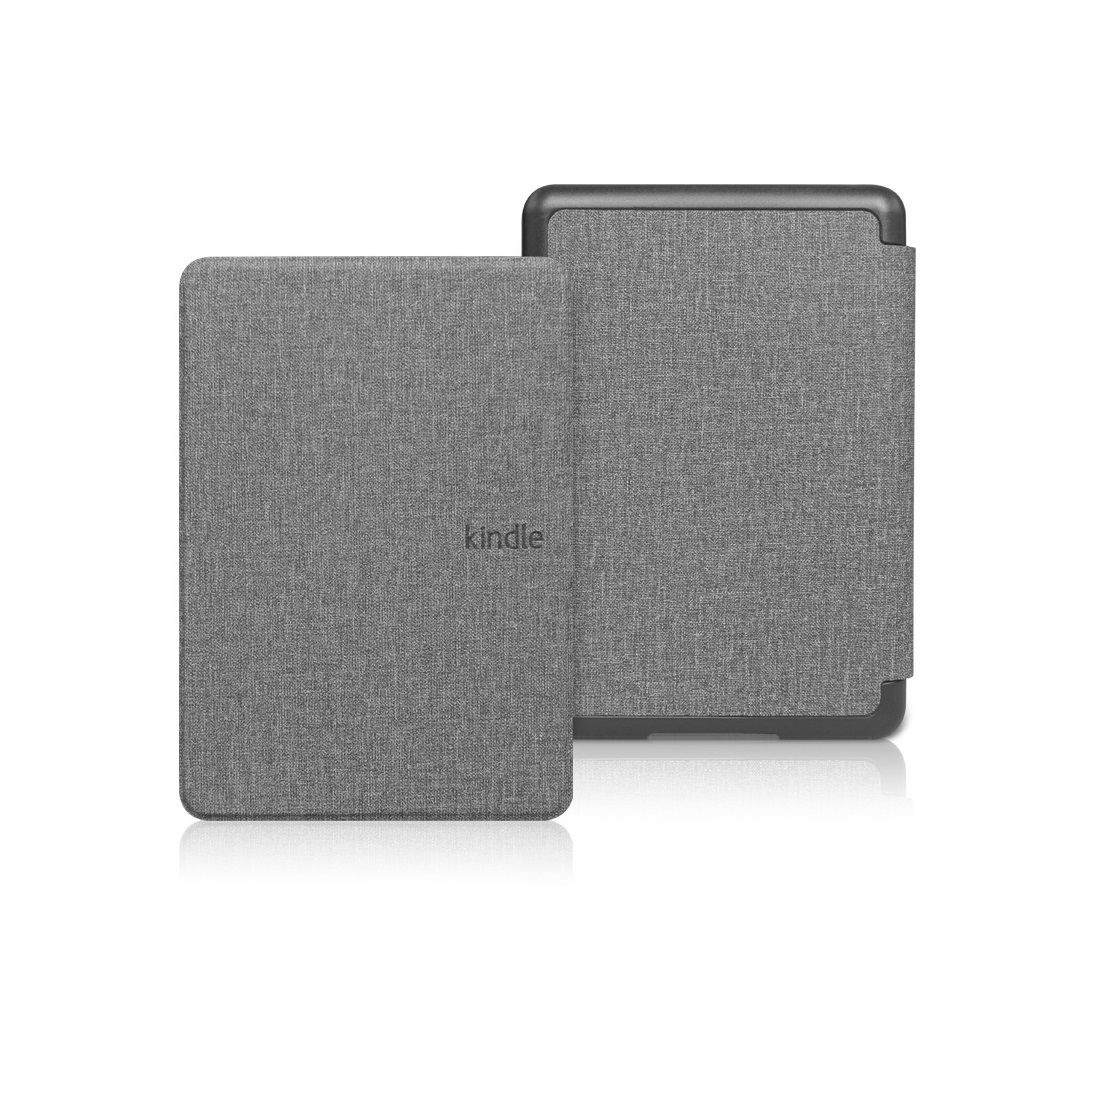 Bao da Cover cho Kindle Paperwhite 5 - Mẫu vân vải, ốp sau PVC - Smartcover tự động tắt mở